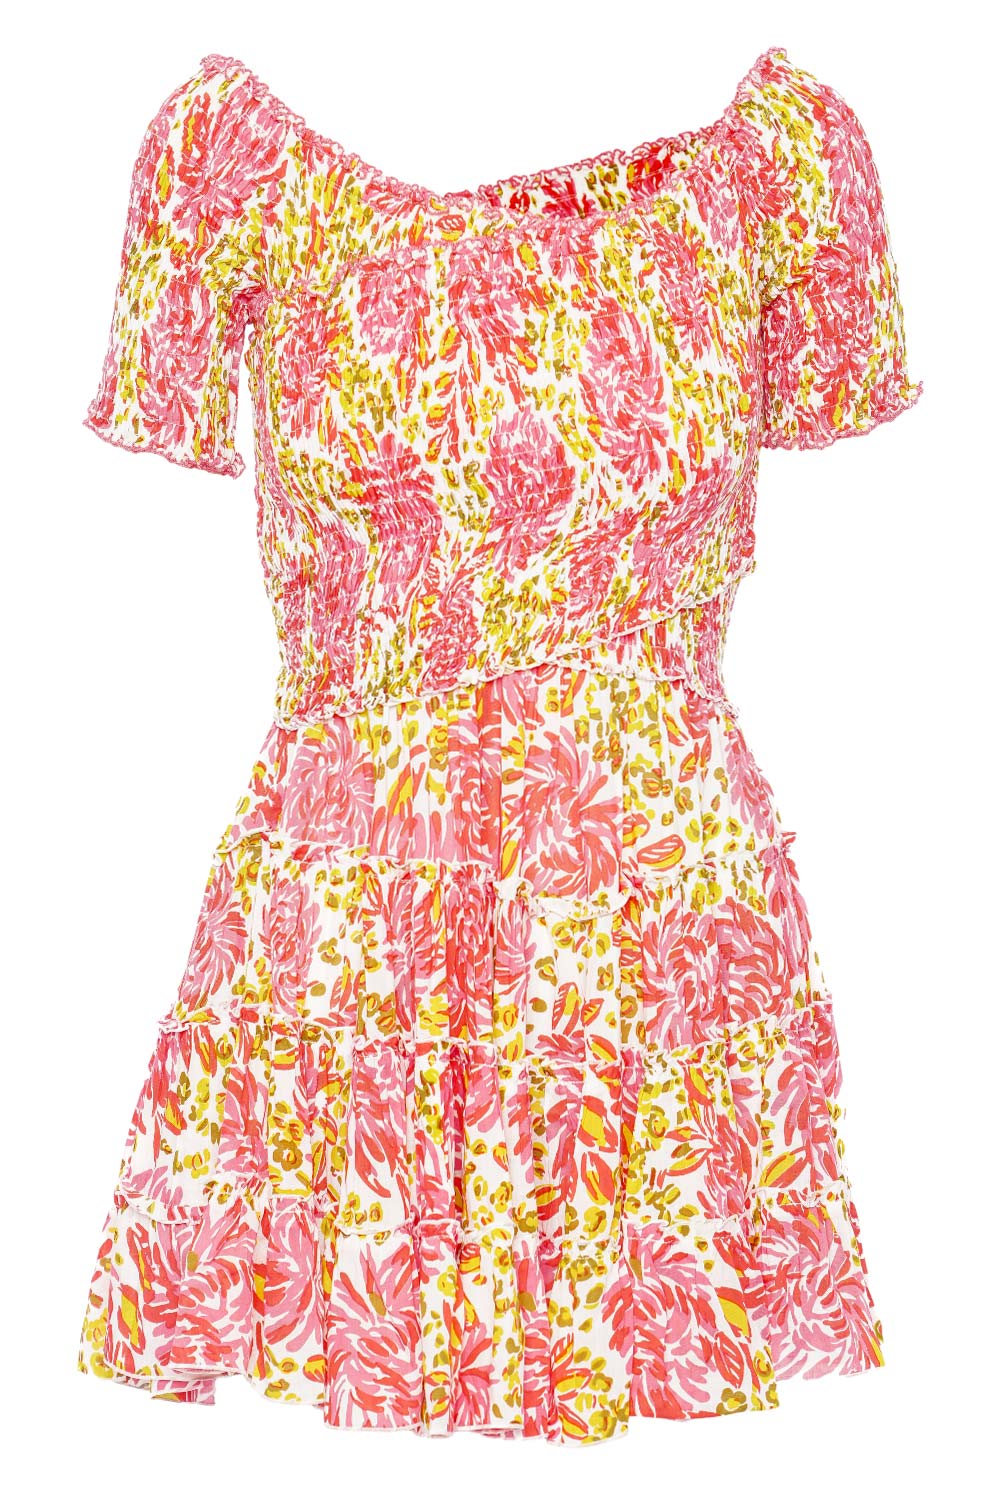 Reine floral cotton midi dress in multicoloured - Poupette St Barth